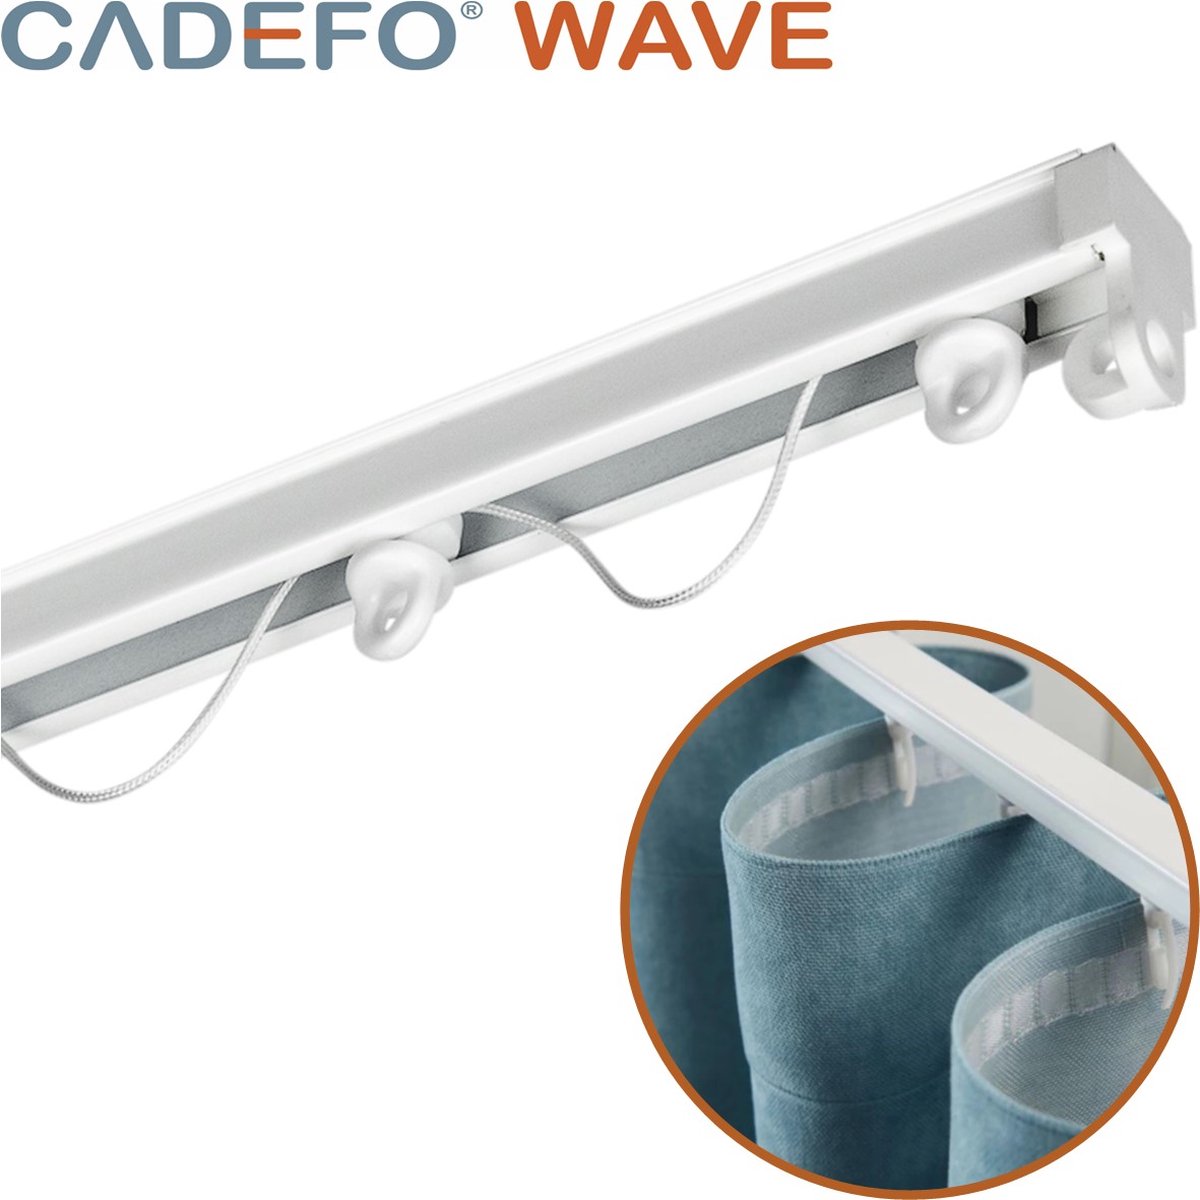 CADEFO WAVE (551 - 600 cm) Gordijnrails - Compleet op maat! - UIT 1 STUK - Leverbaar tot 6 meter - Plafondbevestiging - Lengte 556 cm